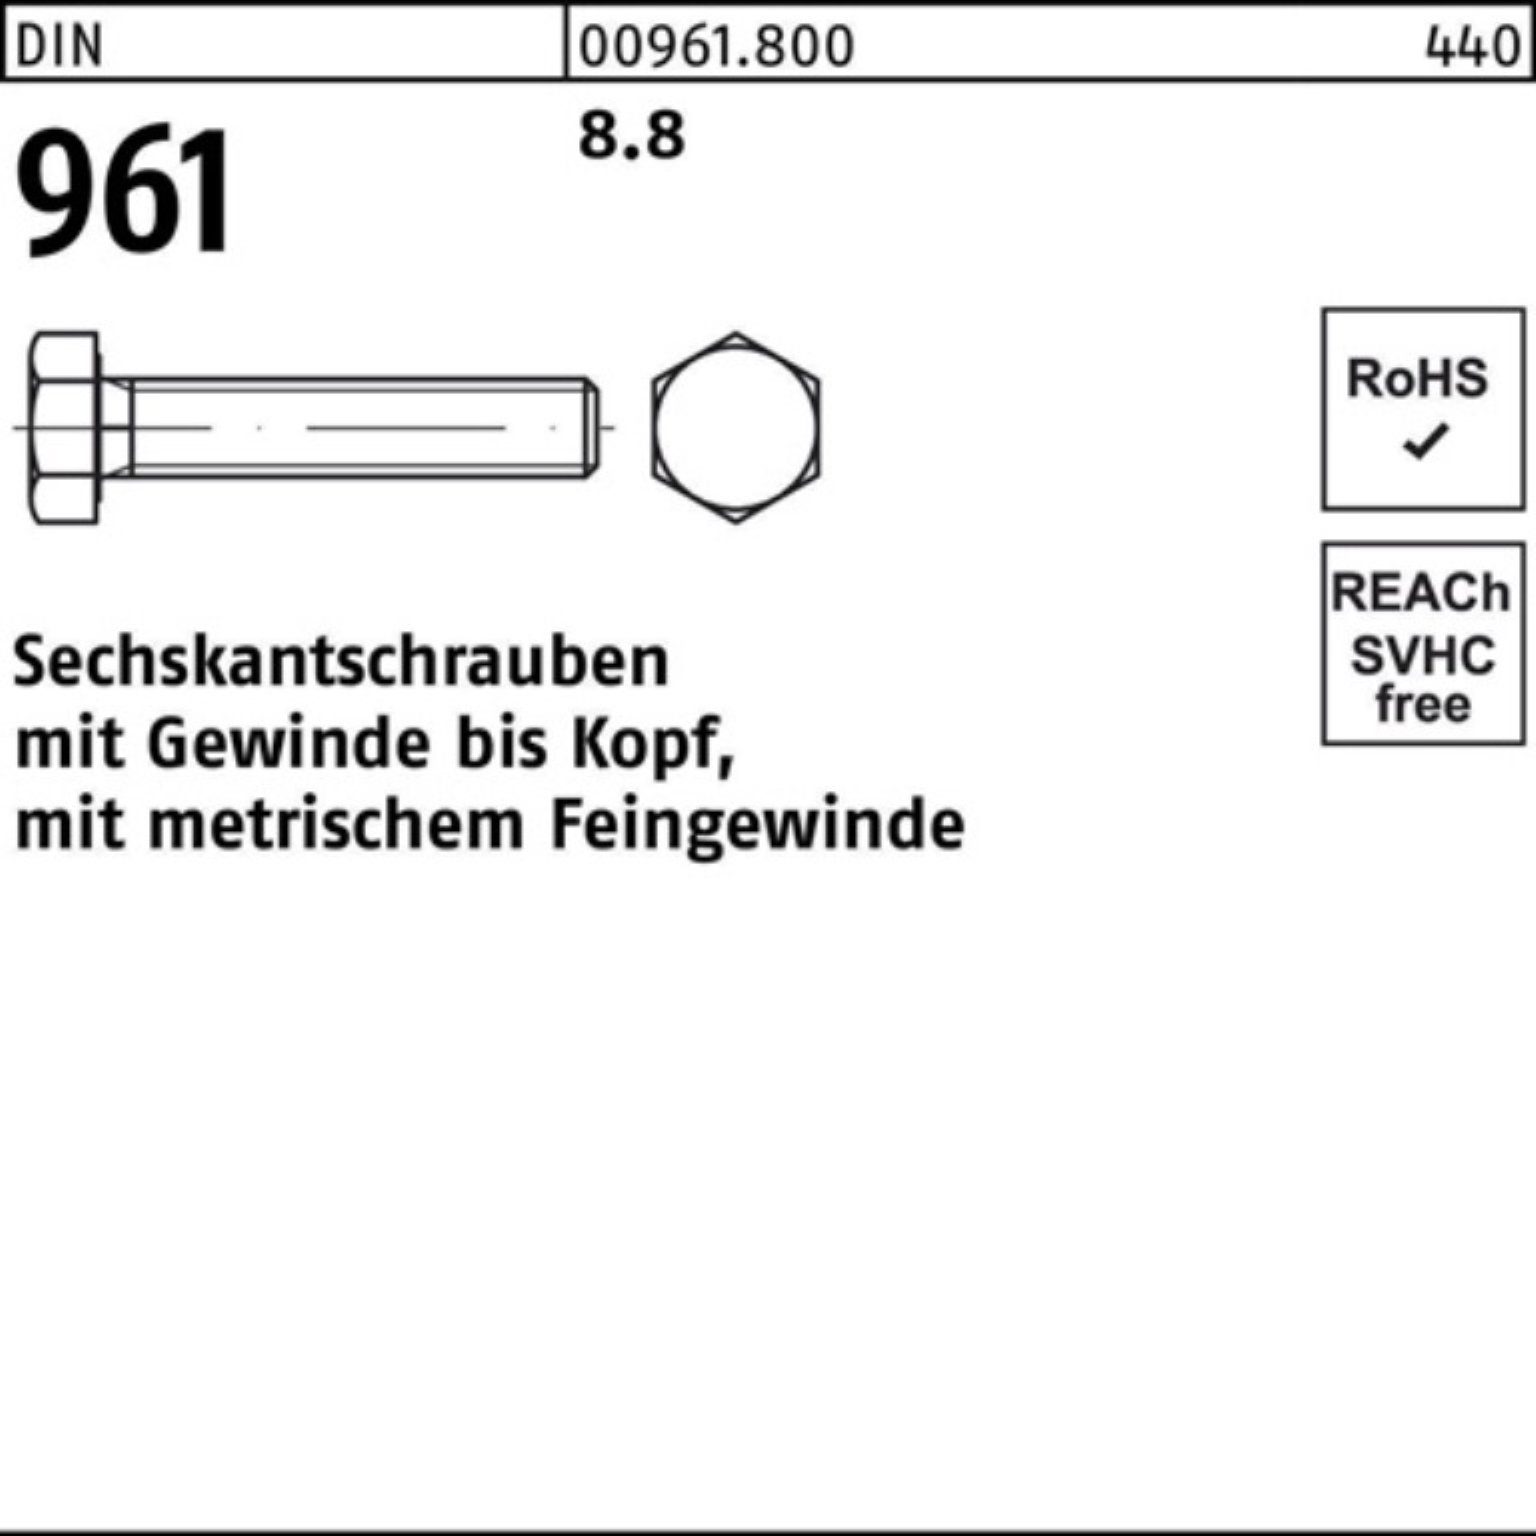 Sechskantschraube VG 100er 8.8 961 Reyher Pack 85 M20x1,5x Stück Sechskantschraube DIN 25 DIN